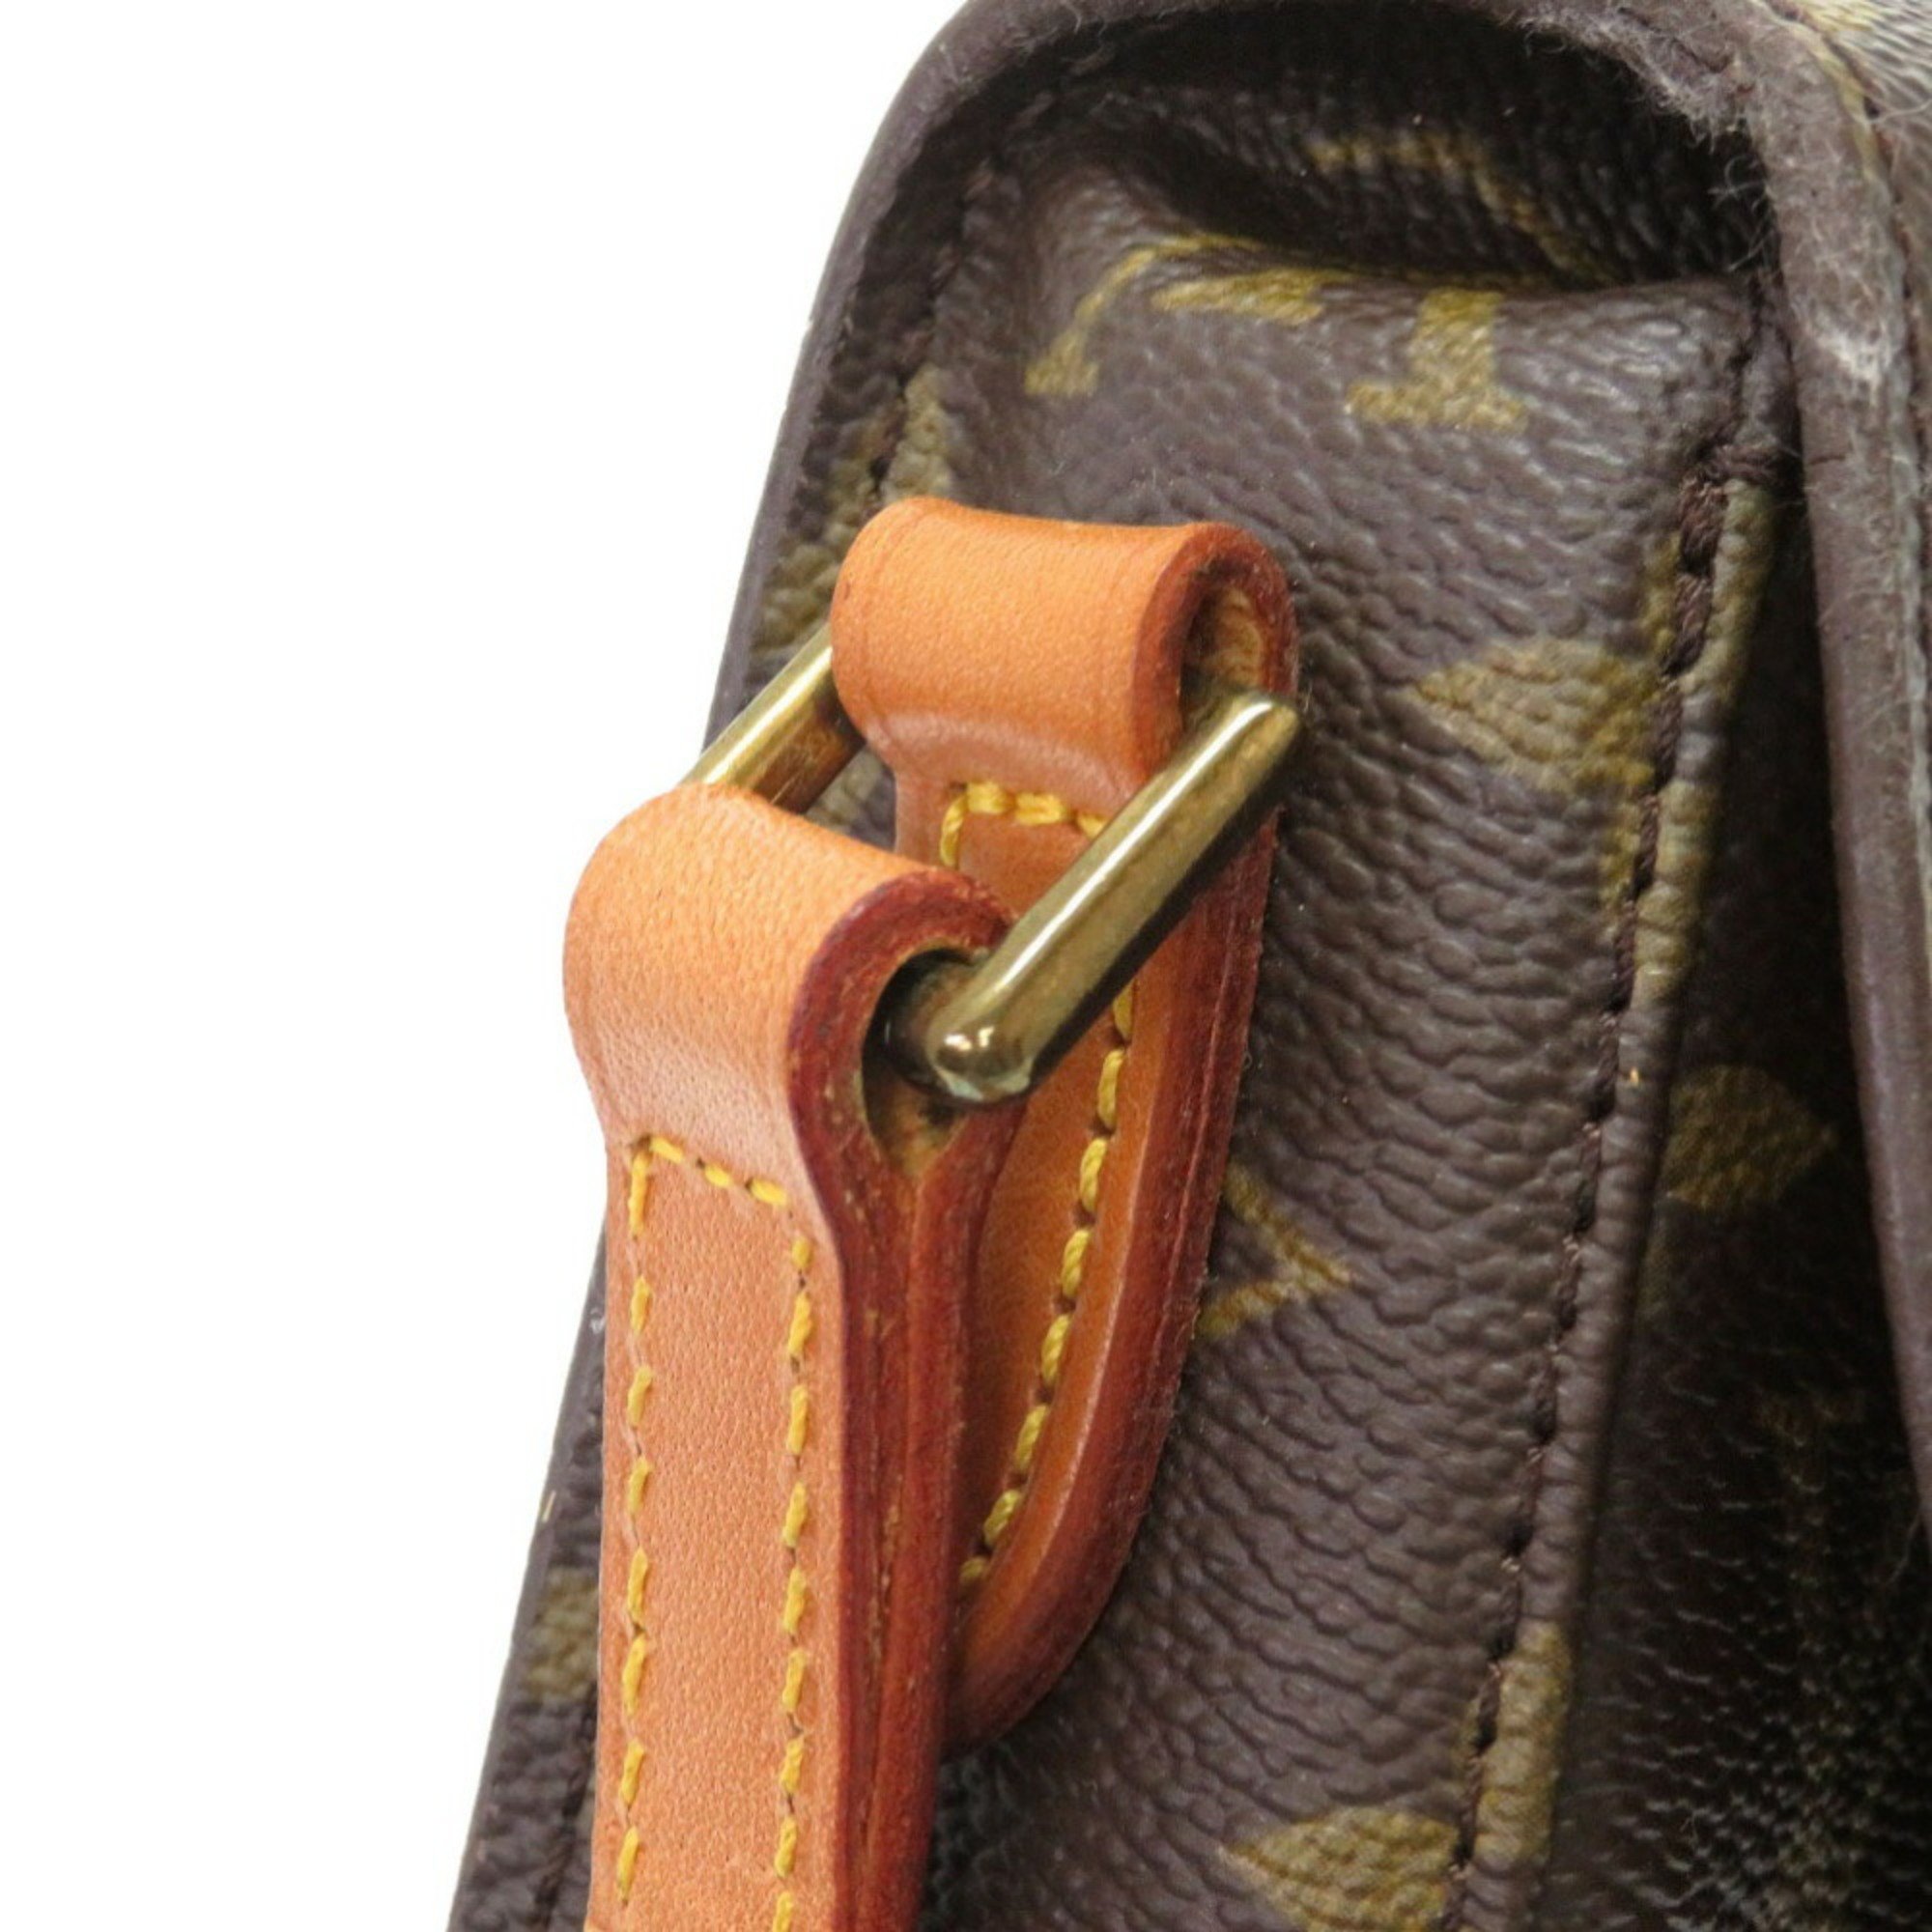 Louis Vuitton Monogram Mini Saint-Cloud M51245 Shoulder Bag 0068 LOUIS VUITTON